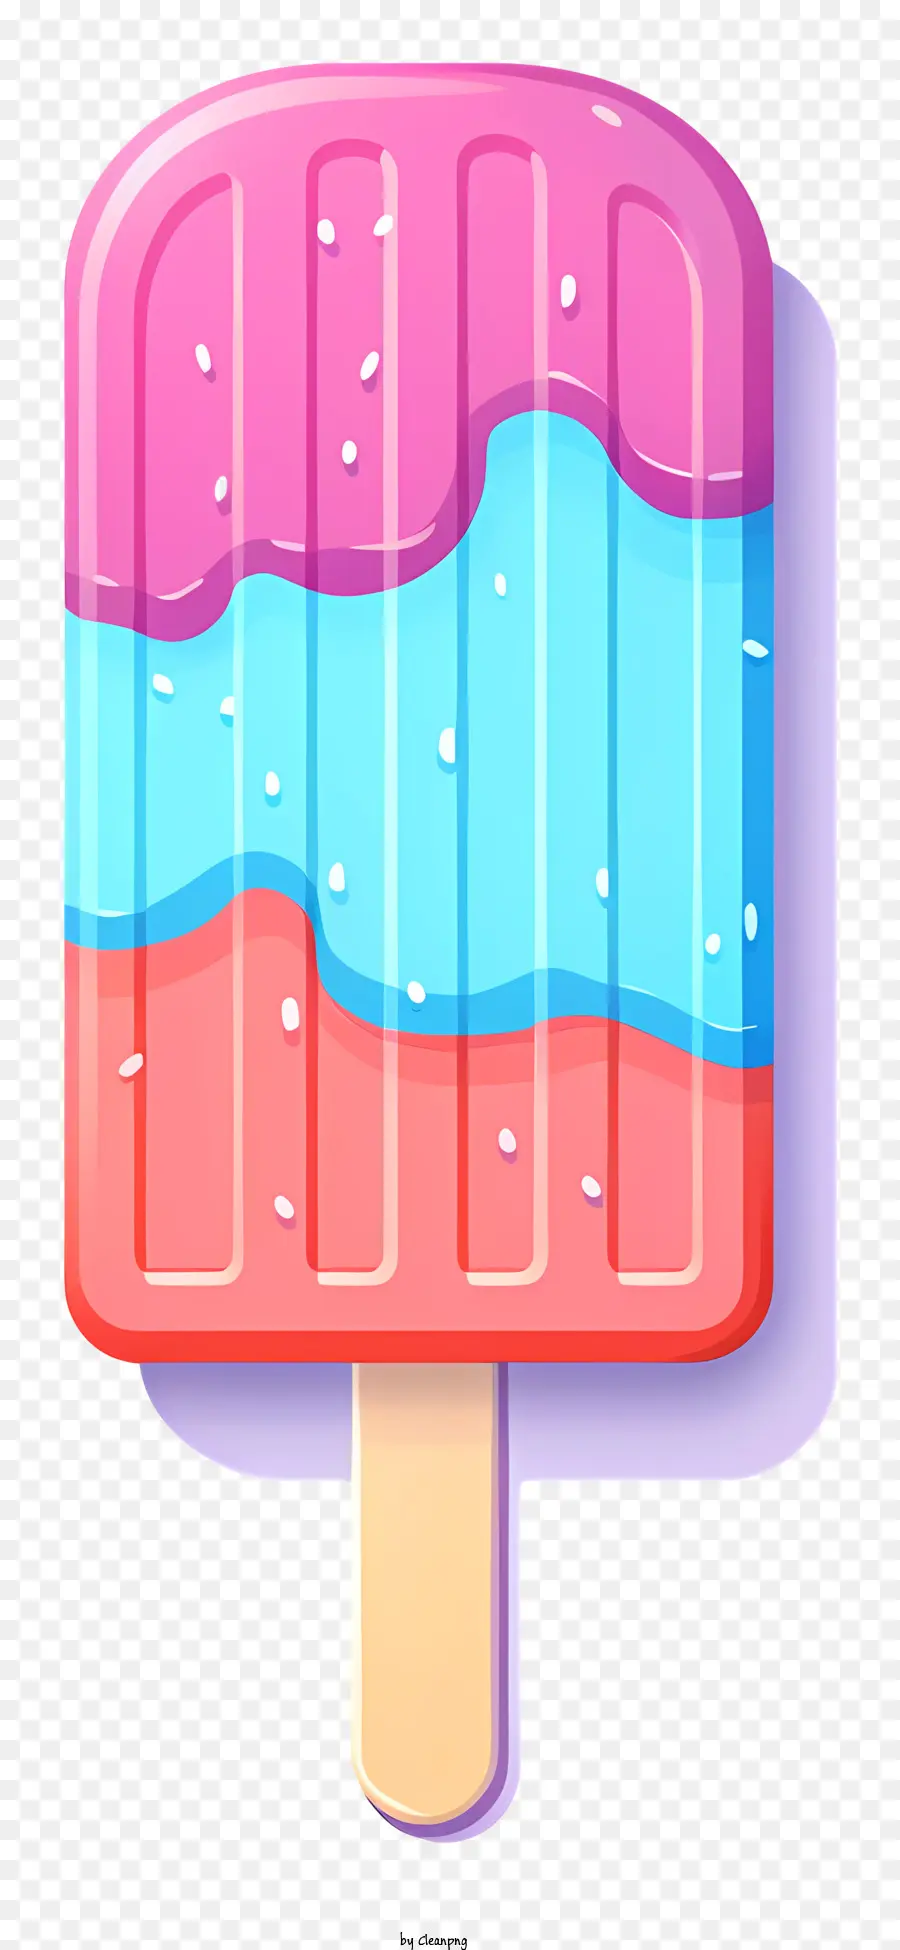 kem - Minh họa vector của popsicle xoáy đầy màu sắc trên gậy